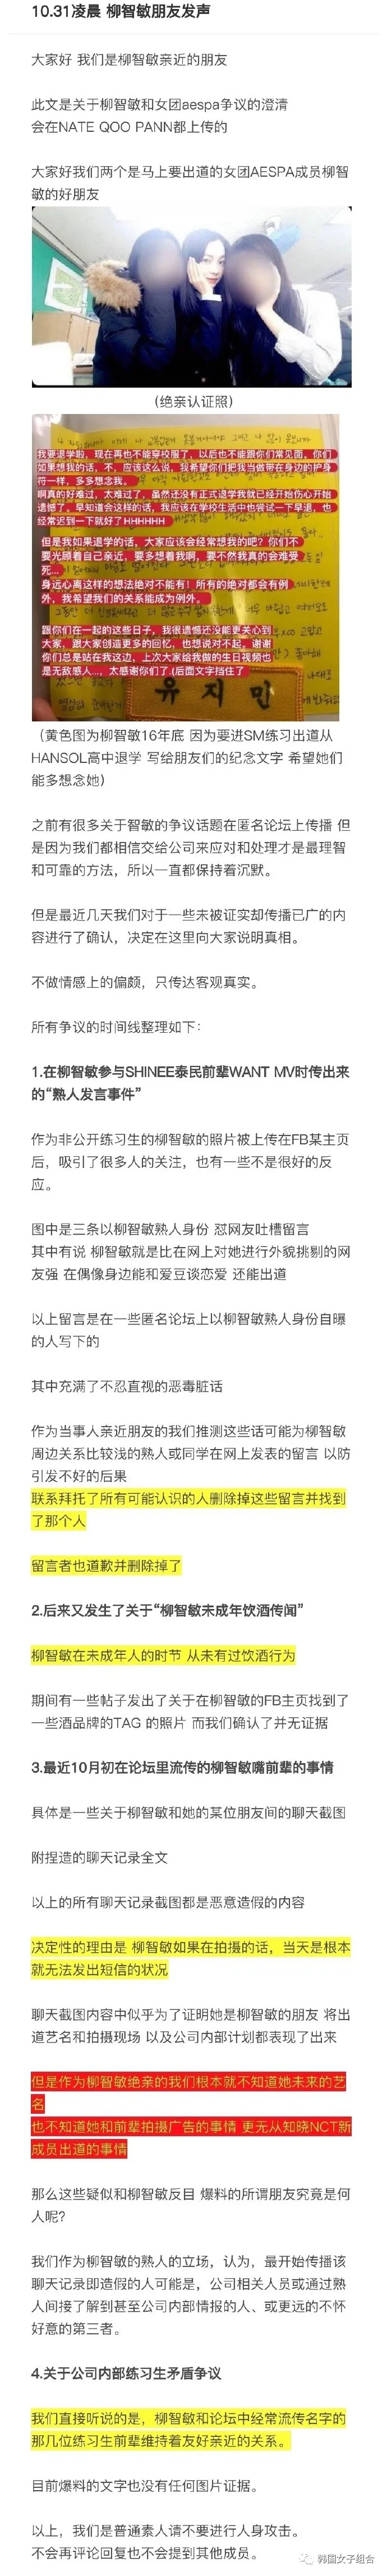 韩网上传的，柳智敏好朋友上传的争议澄清帖